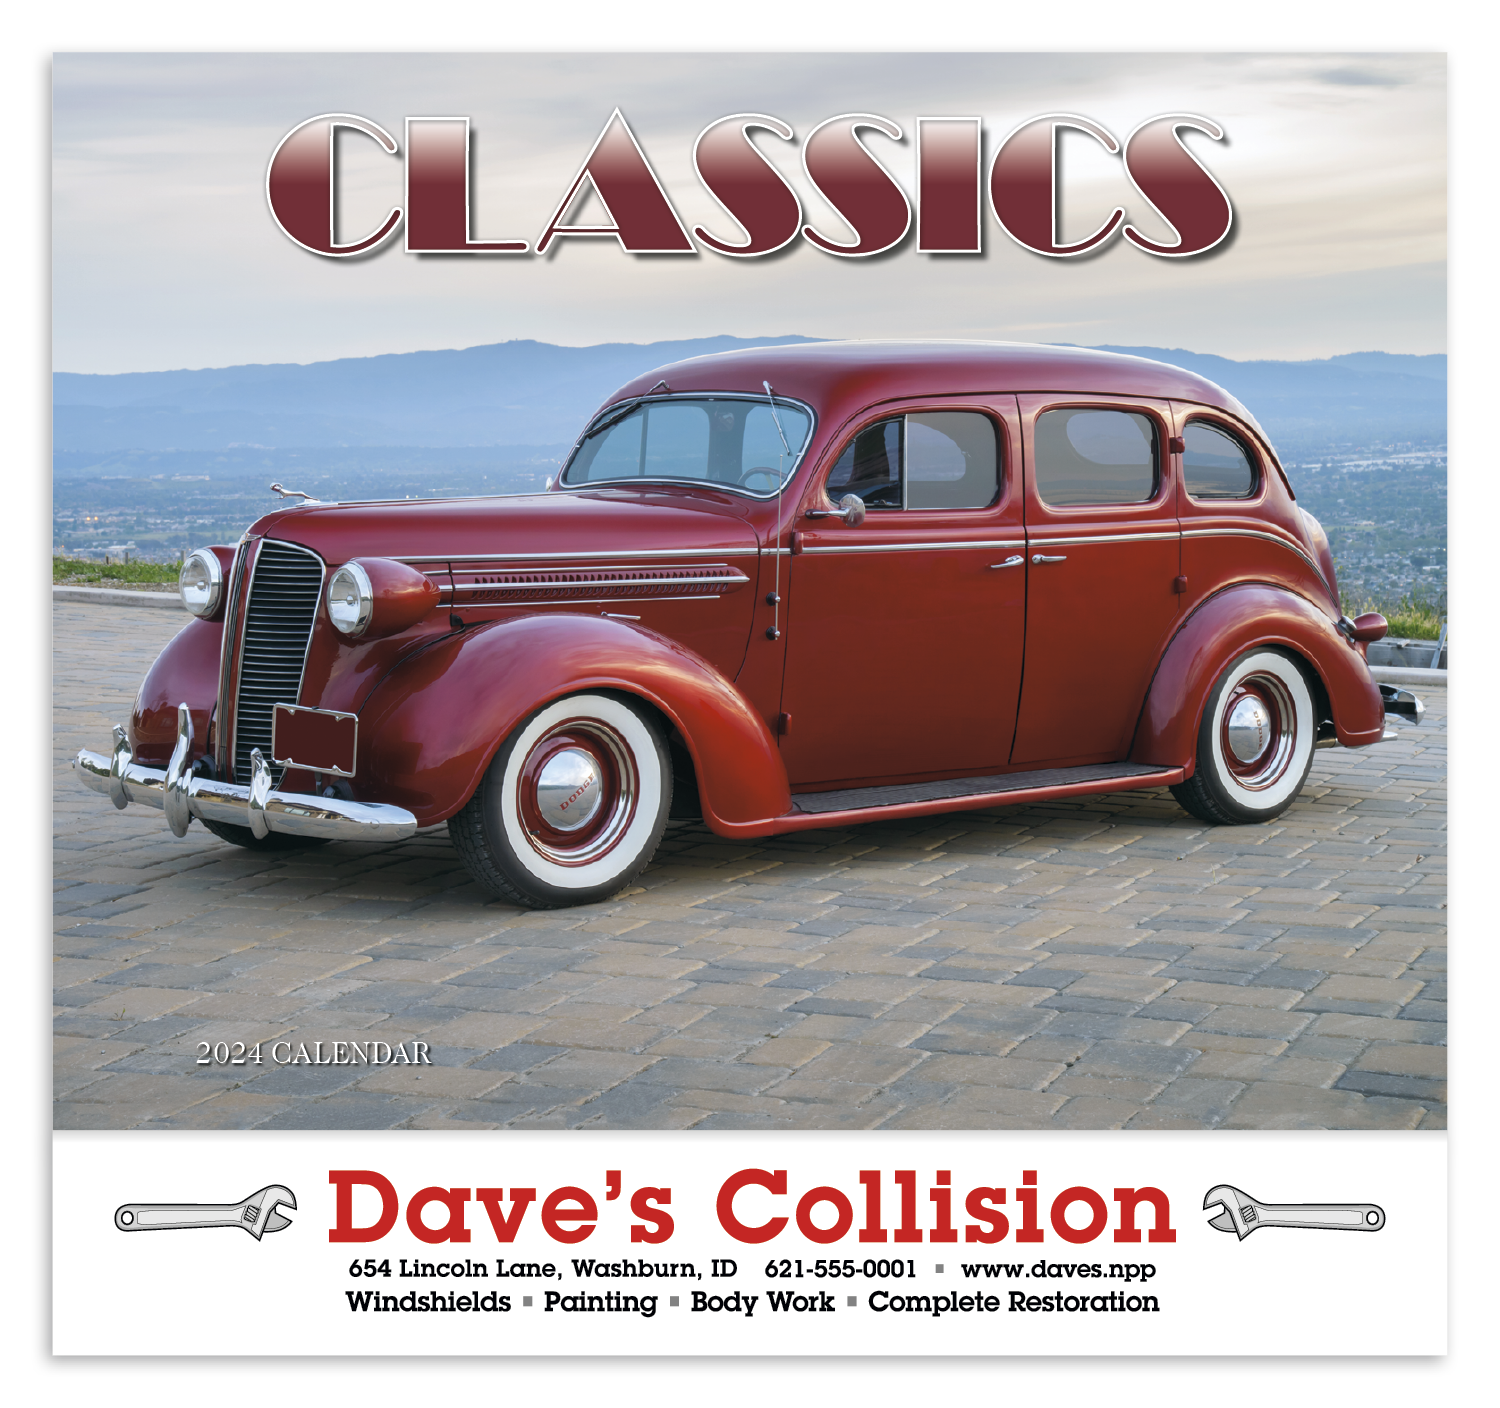 automotive classics calendars